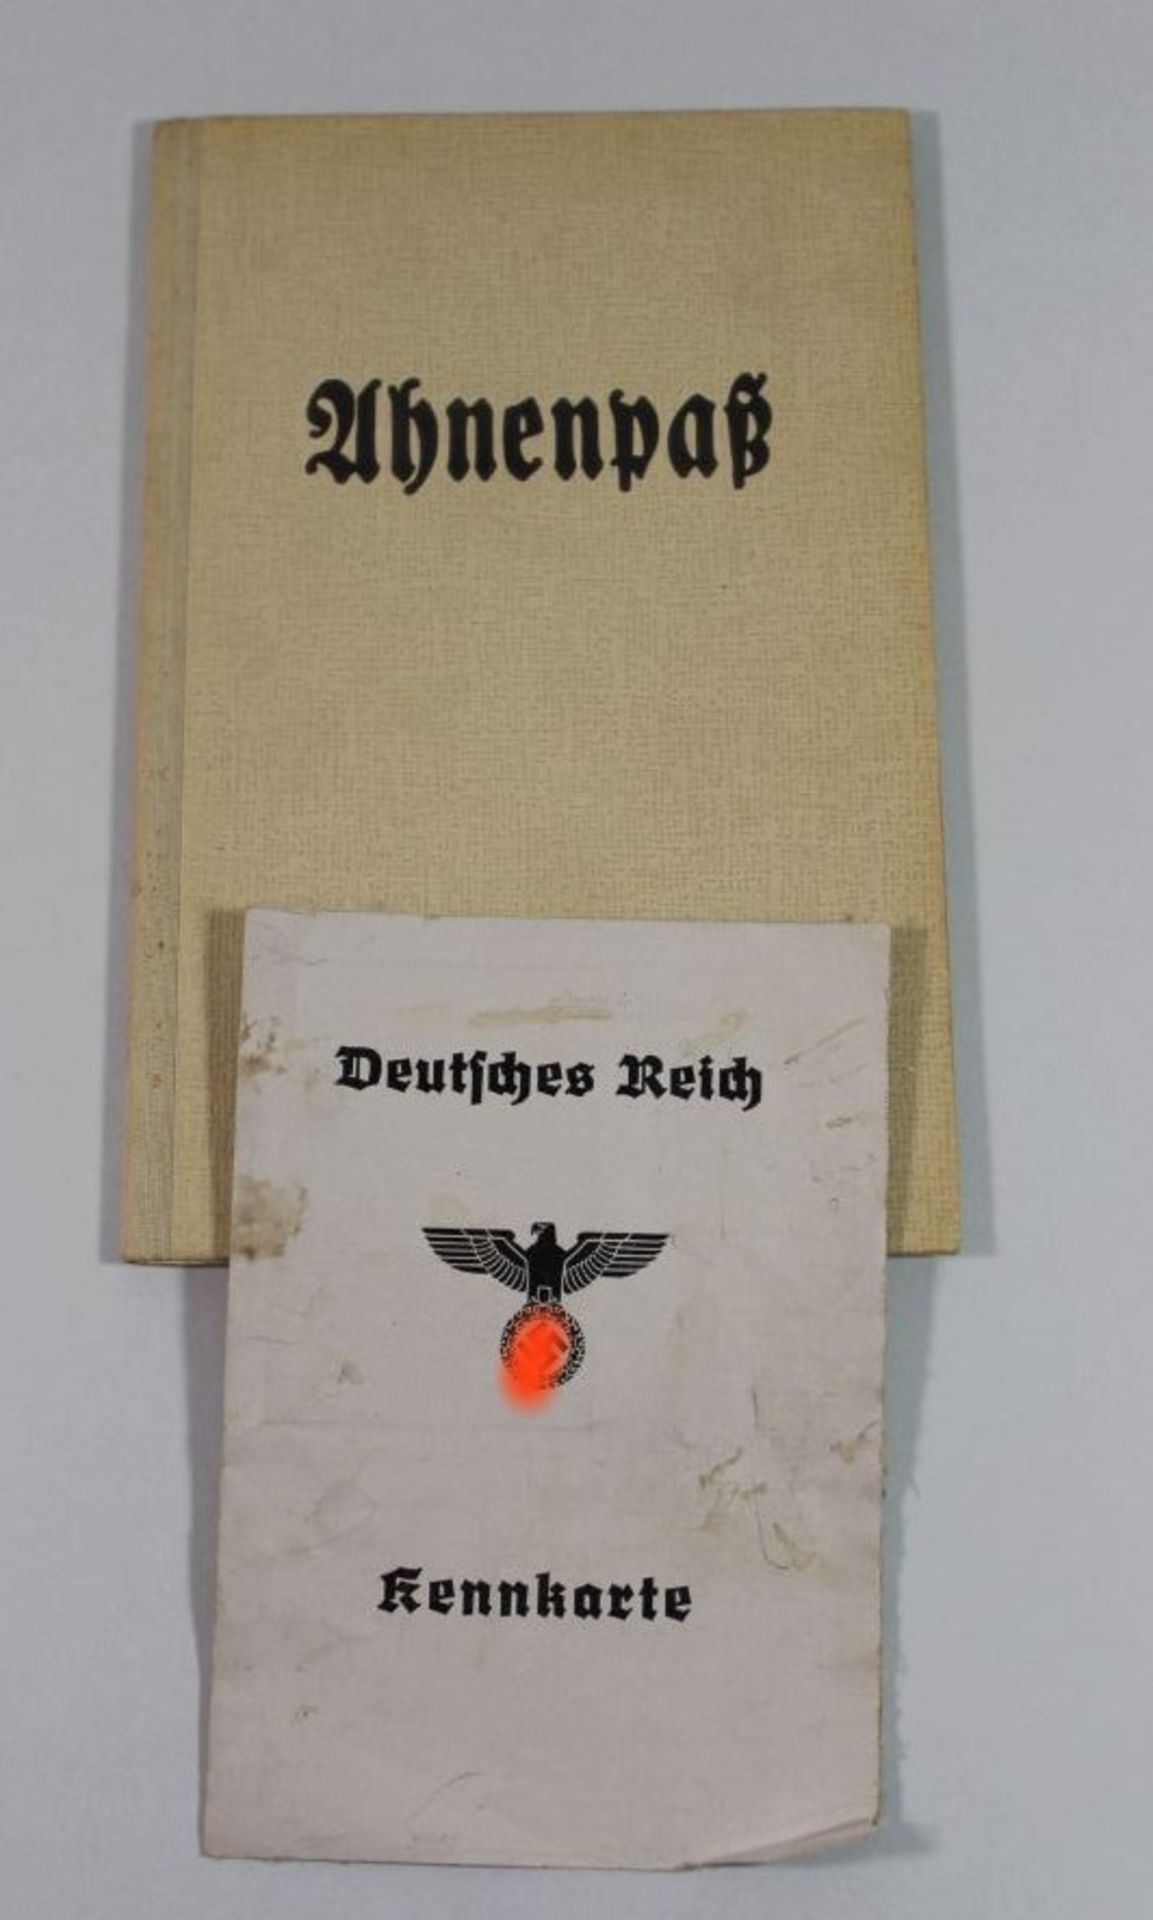 Ahnenpaß (leer) und Kennkarte, 3. Reich.